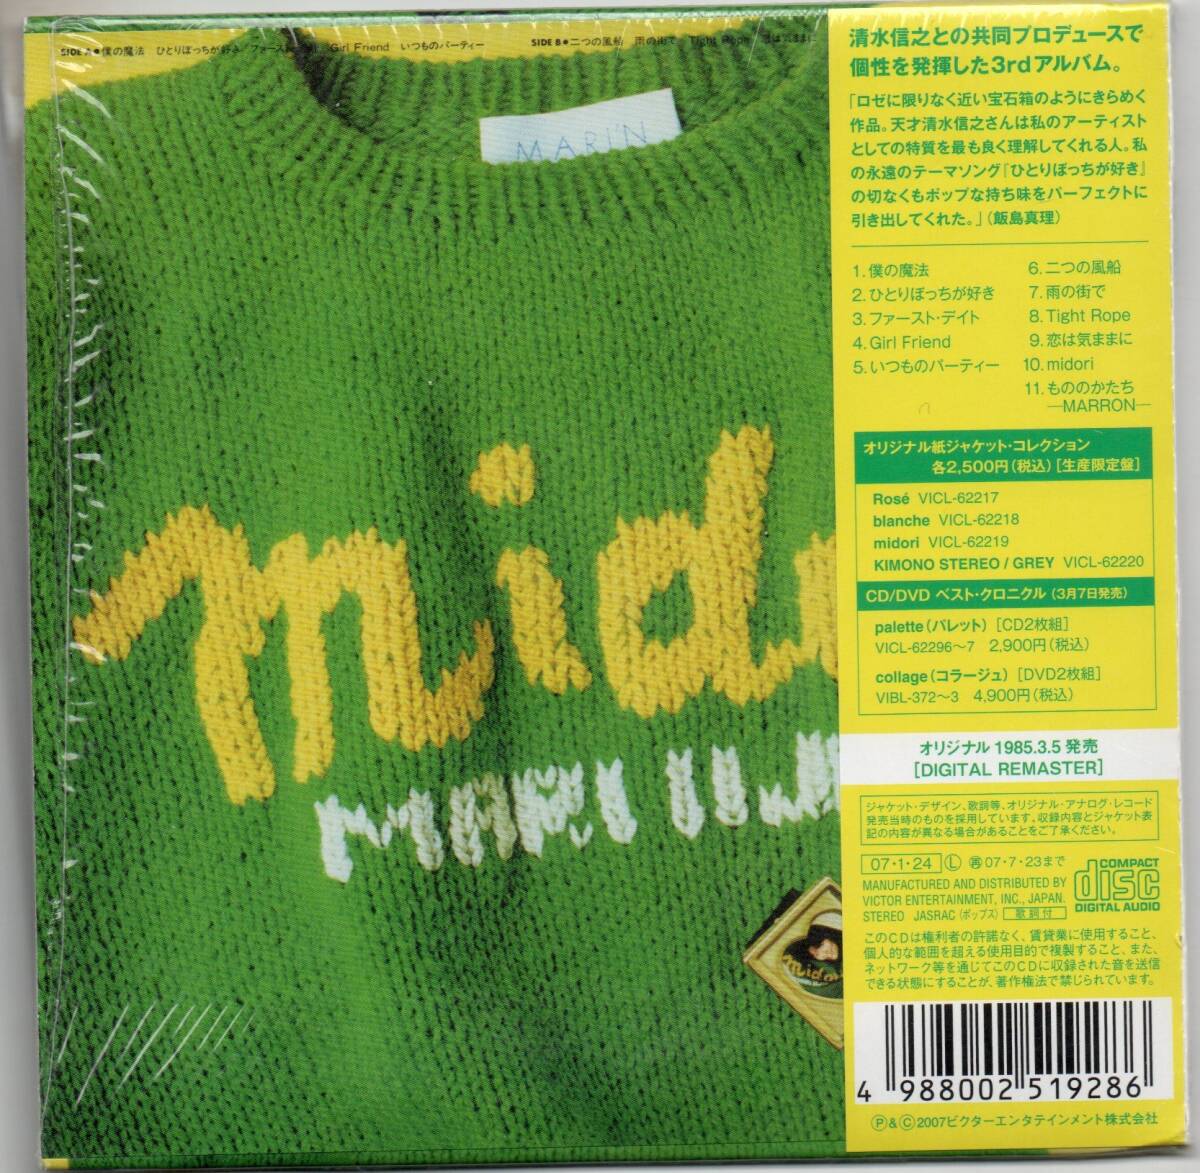 中古CD/midori ミドリ (紙ジャケット仕様) 飯島真理 セル盤